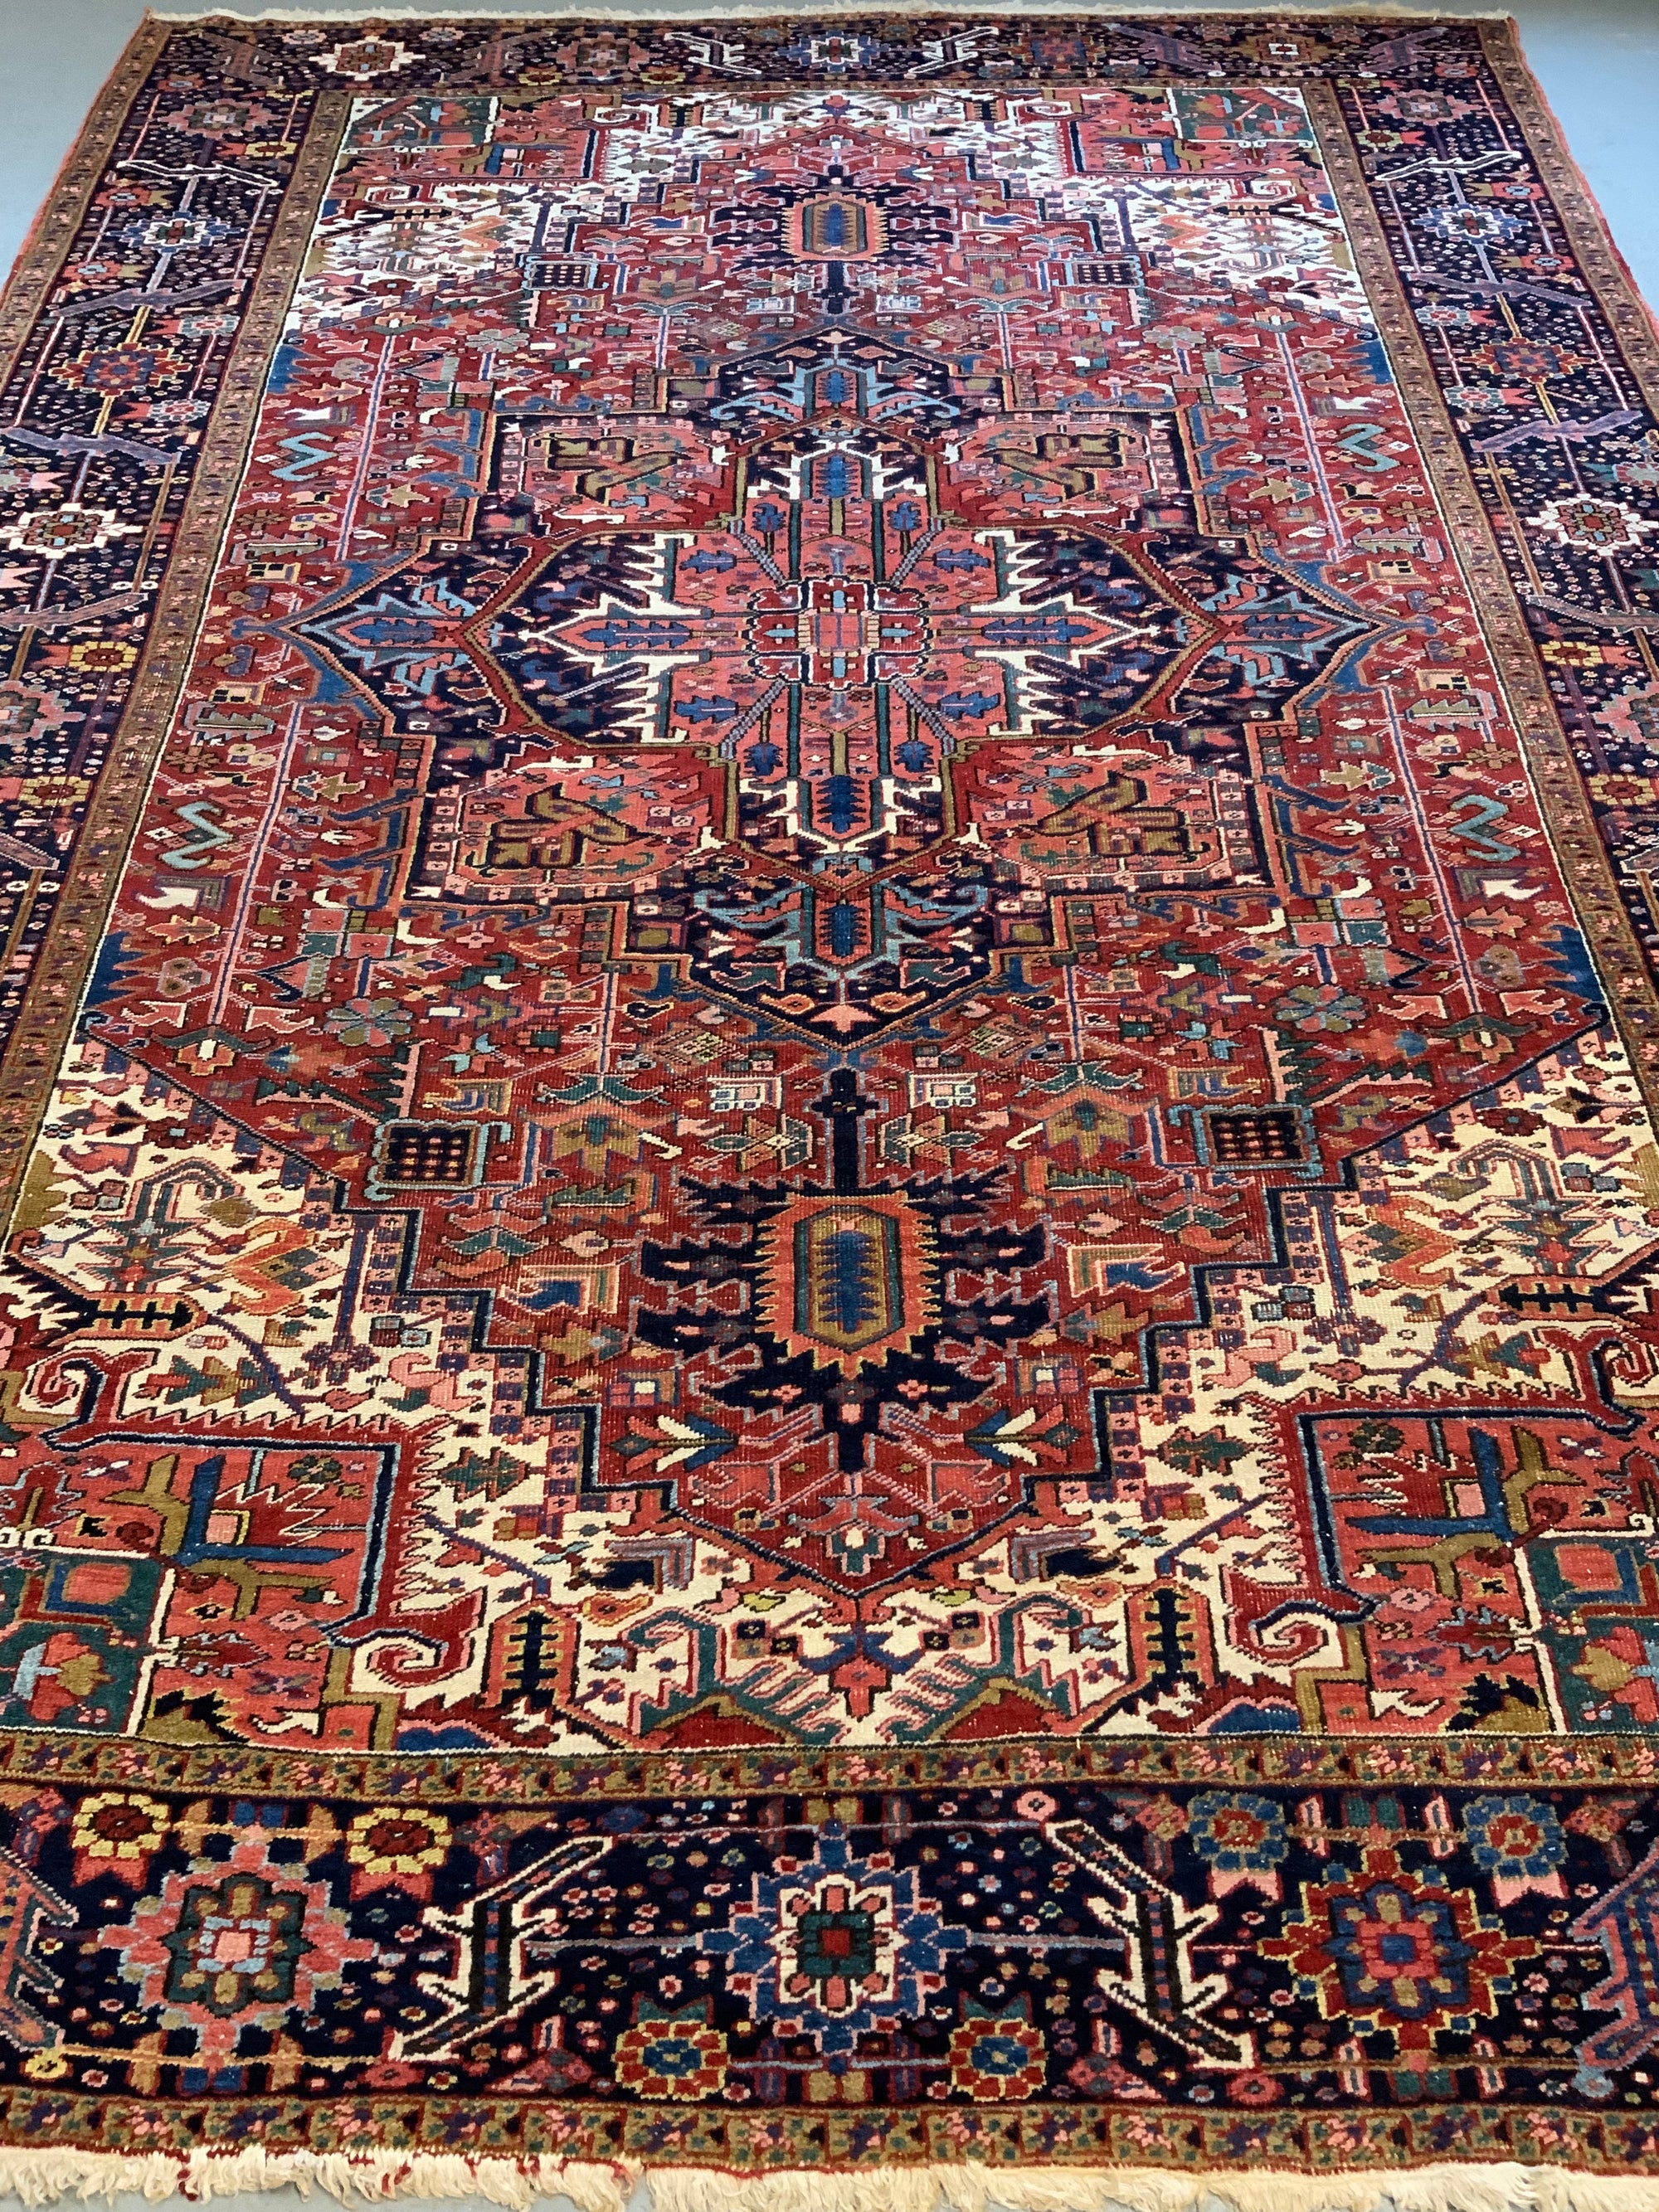 Heriz carpet (352 x 261cm)